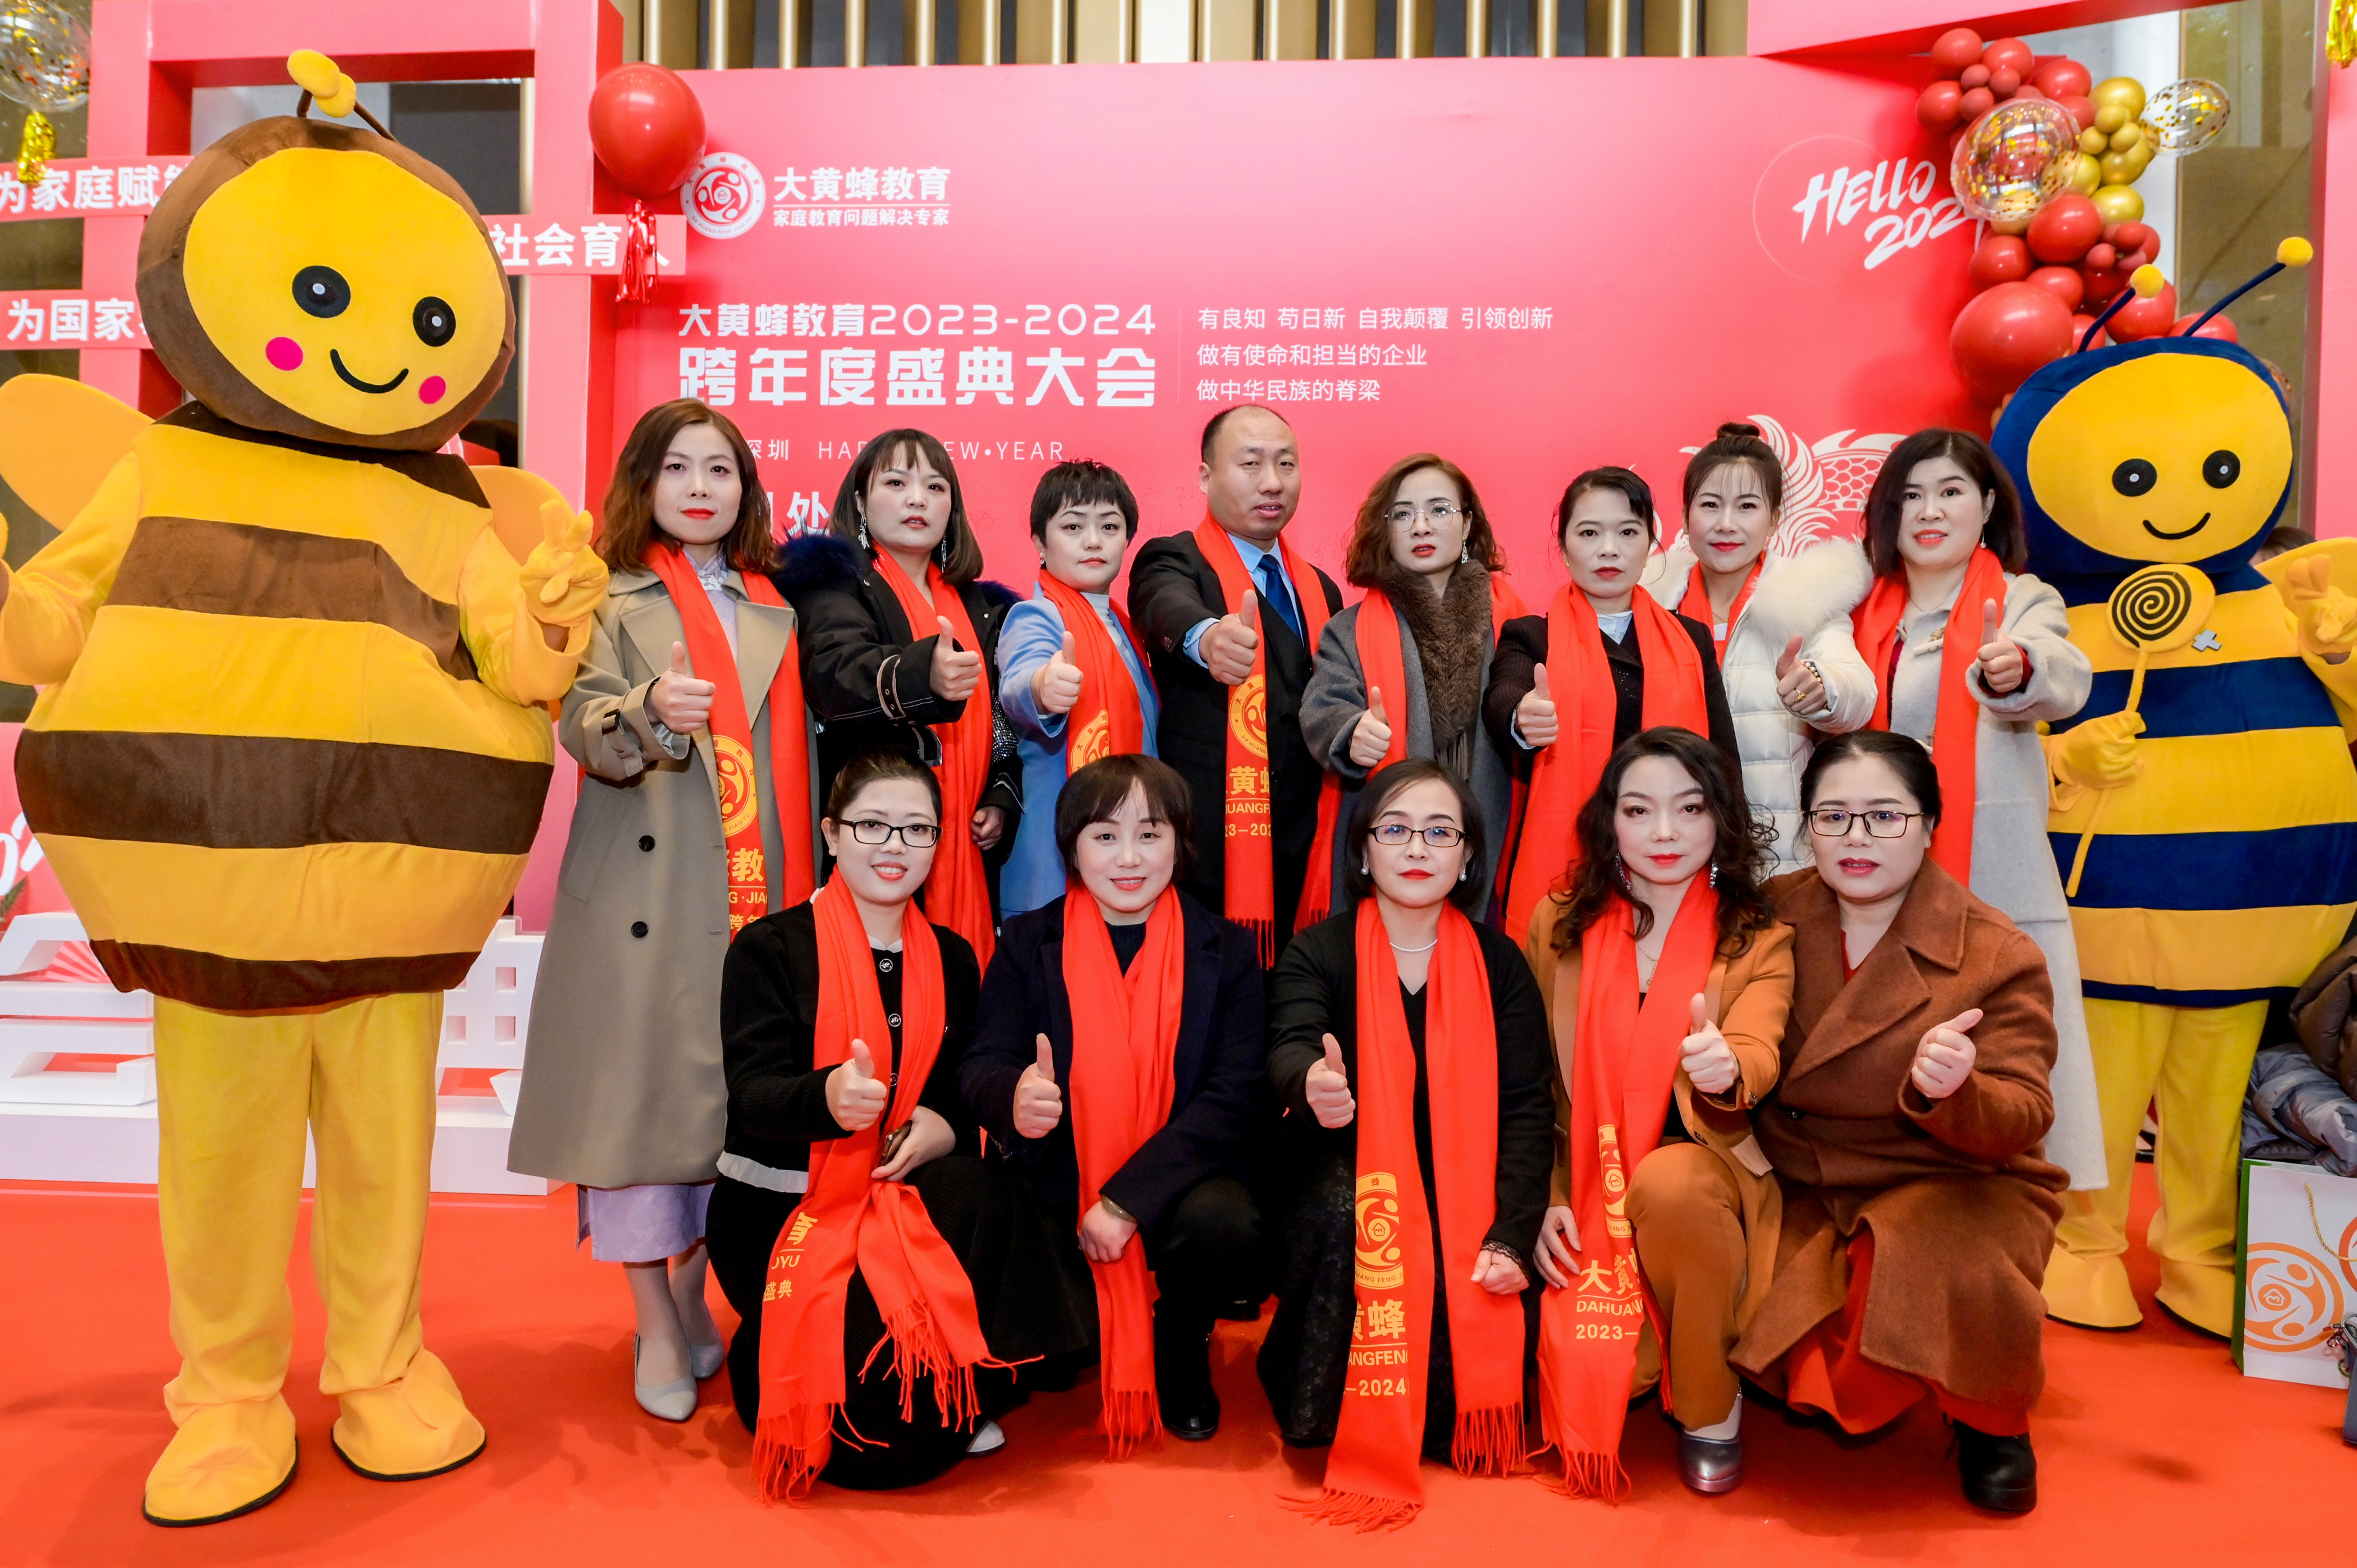 大黄蜂教育2023-2024跨年盛典顺利召开